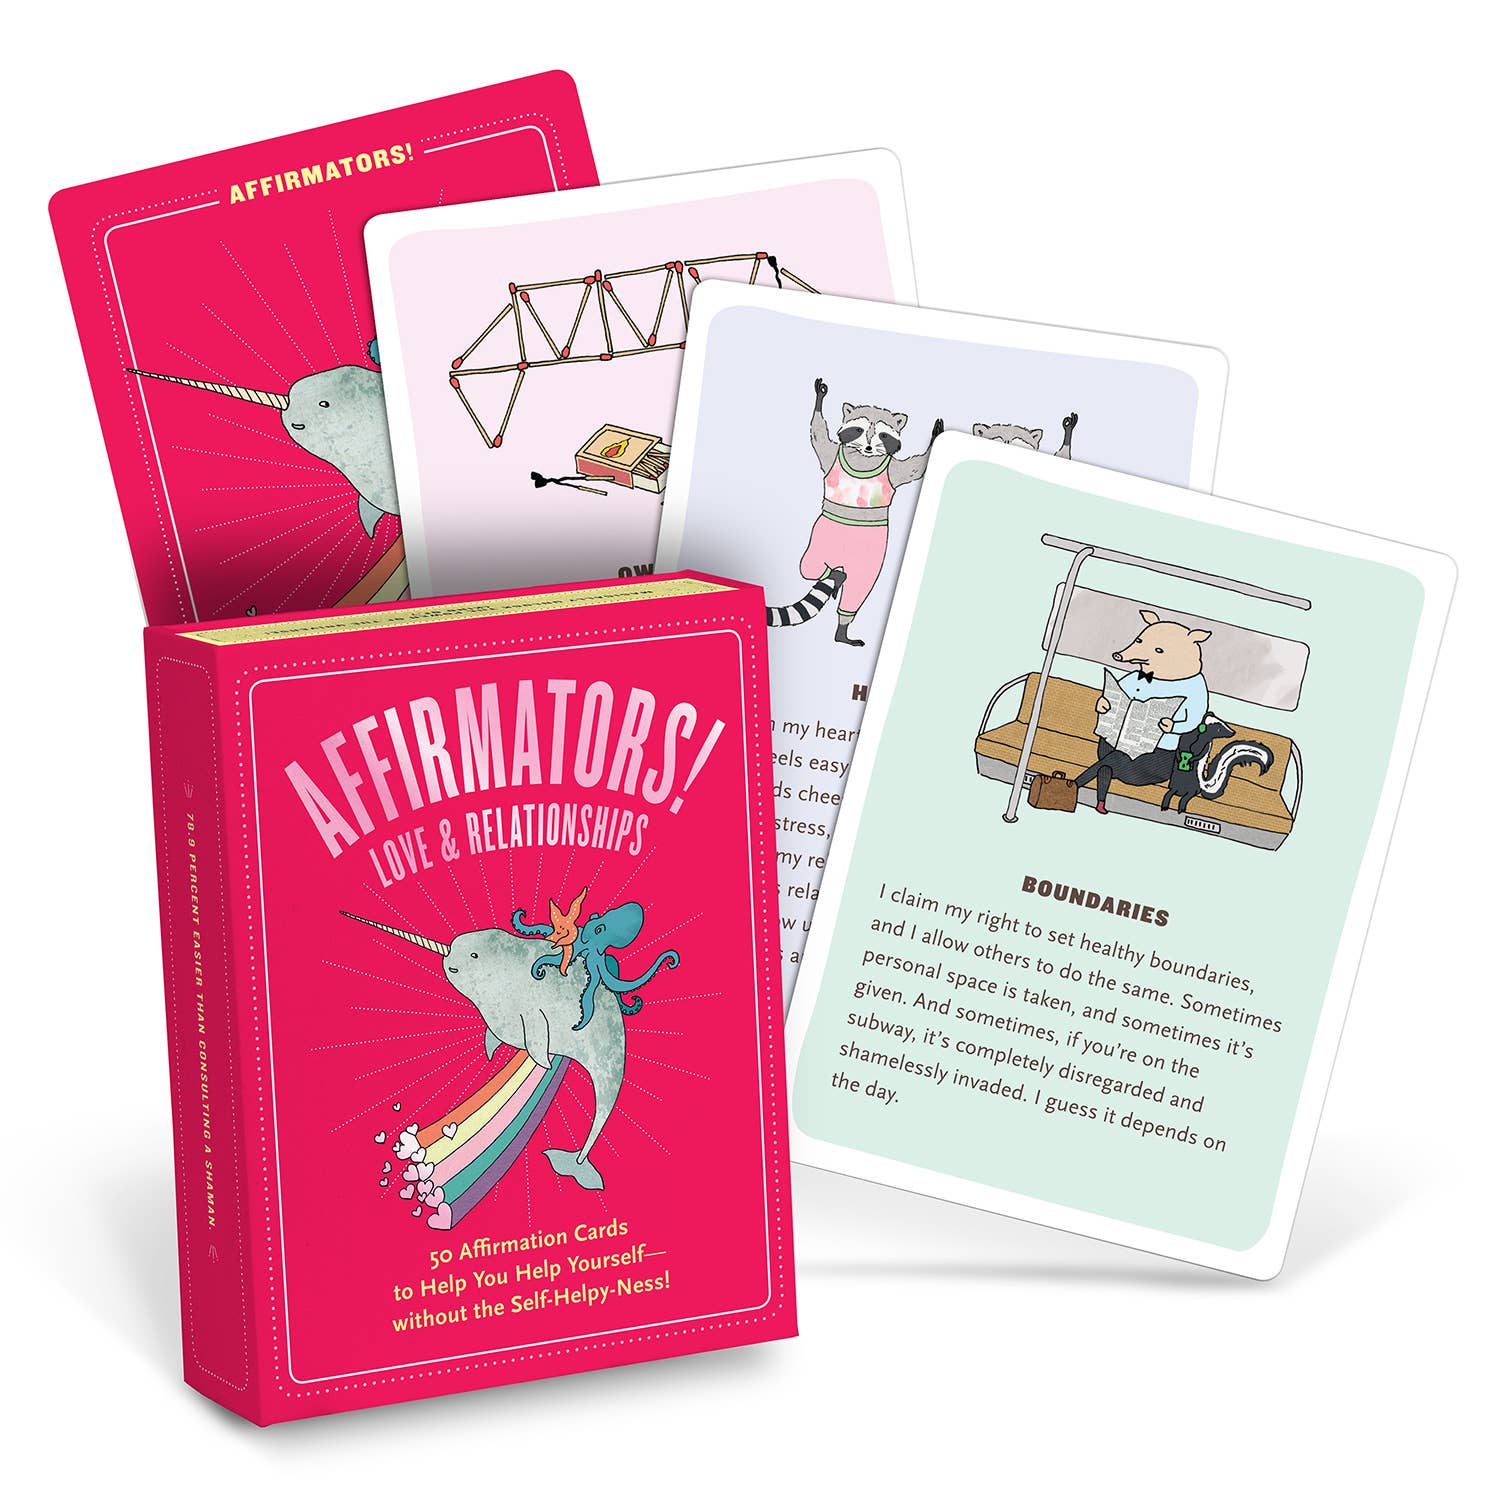 Affirmators!® Love & Relationships: 50 Affirmation Cards